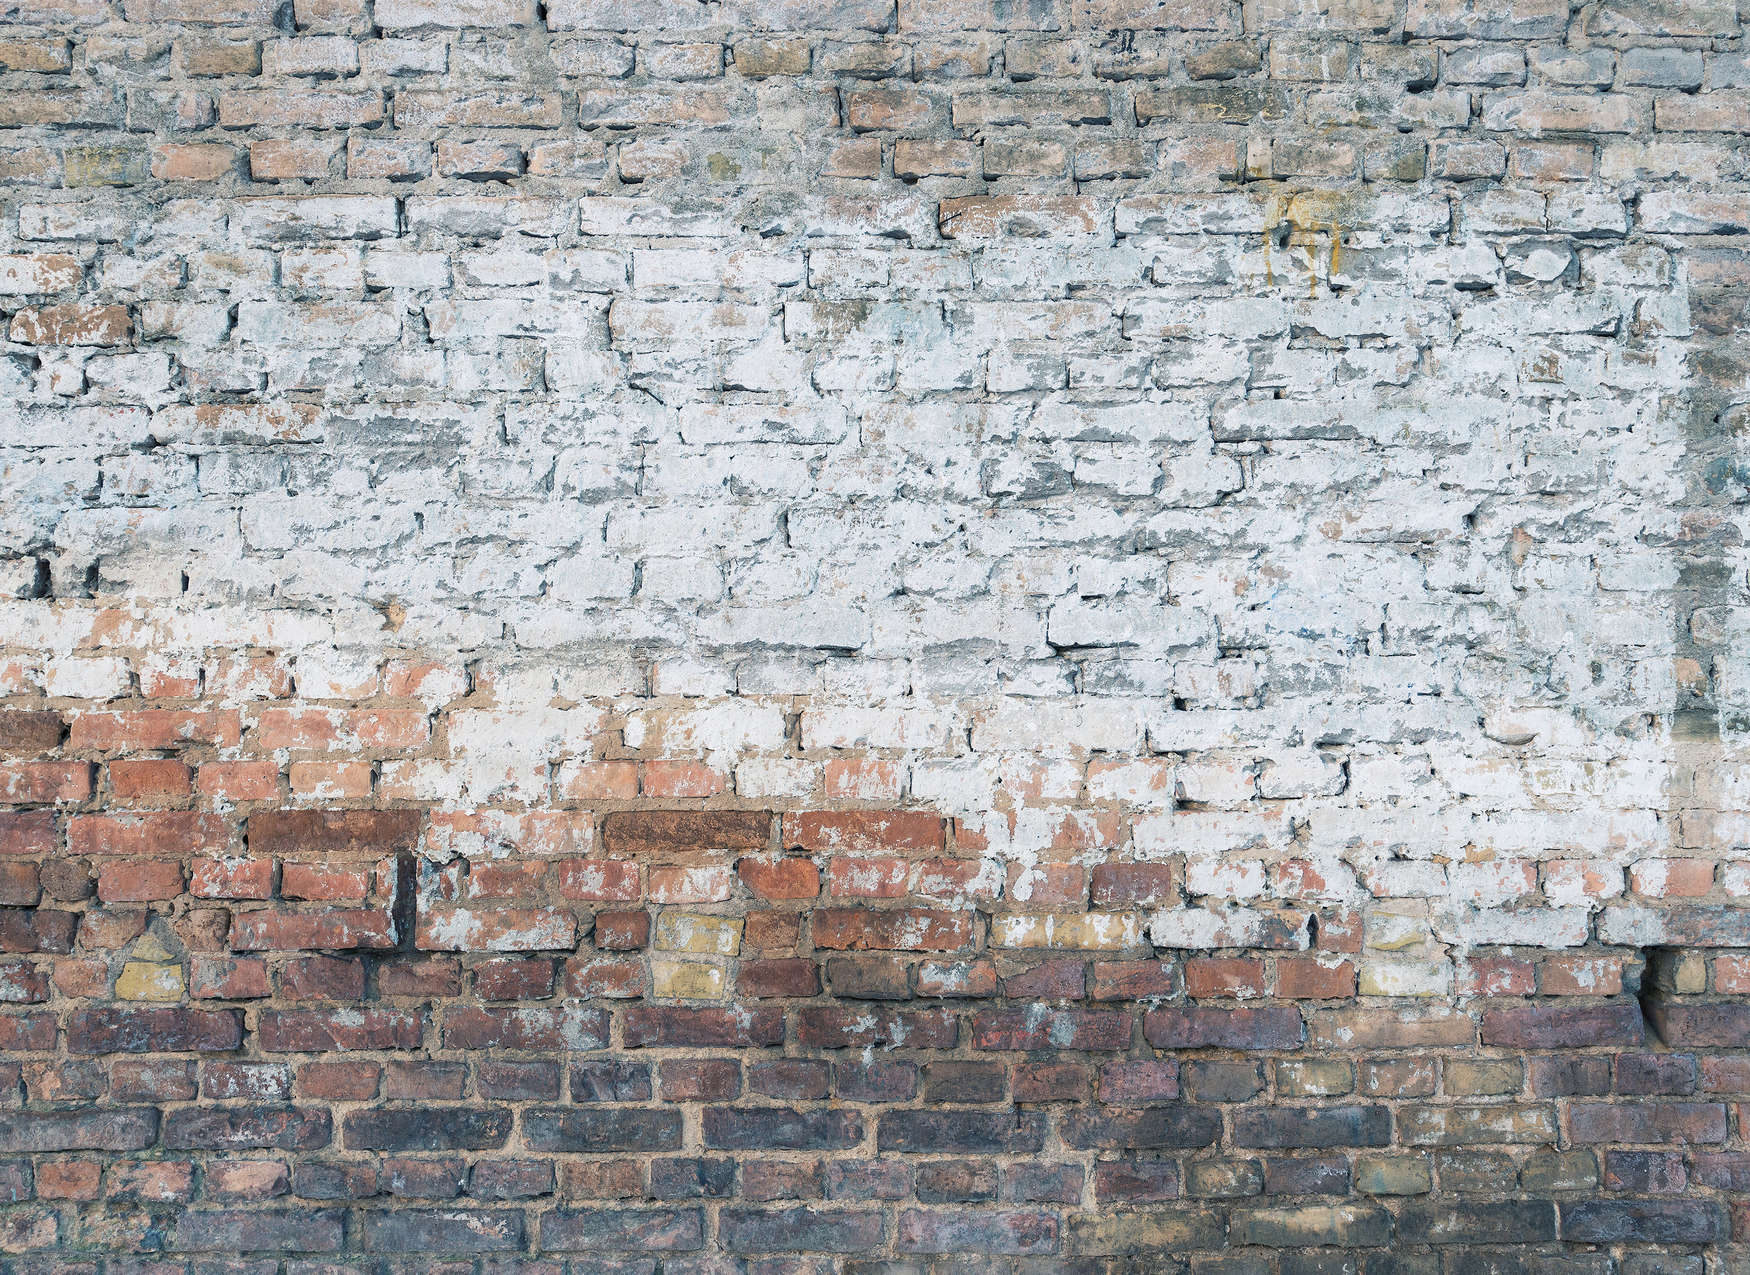             Fototapete mit Backsteinmauer im realistischen Industrialstyle – Braun, Grau, Weiß
        